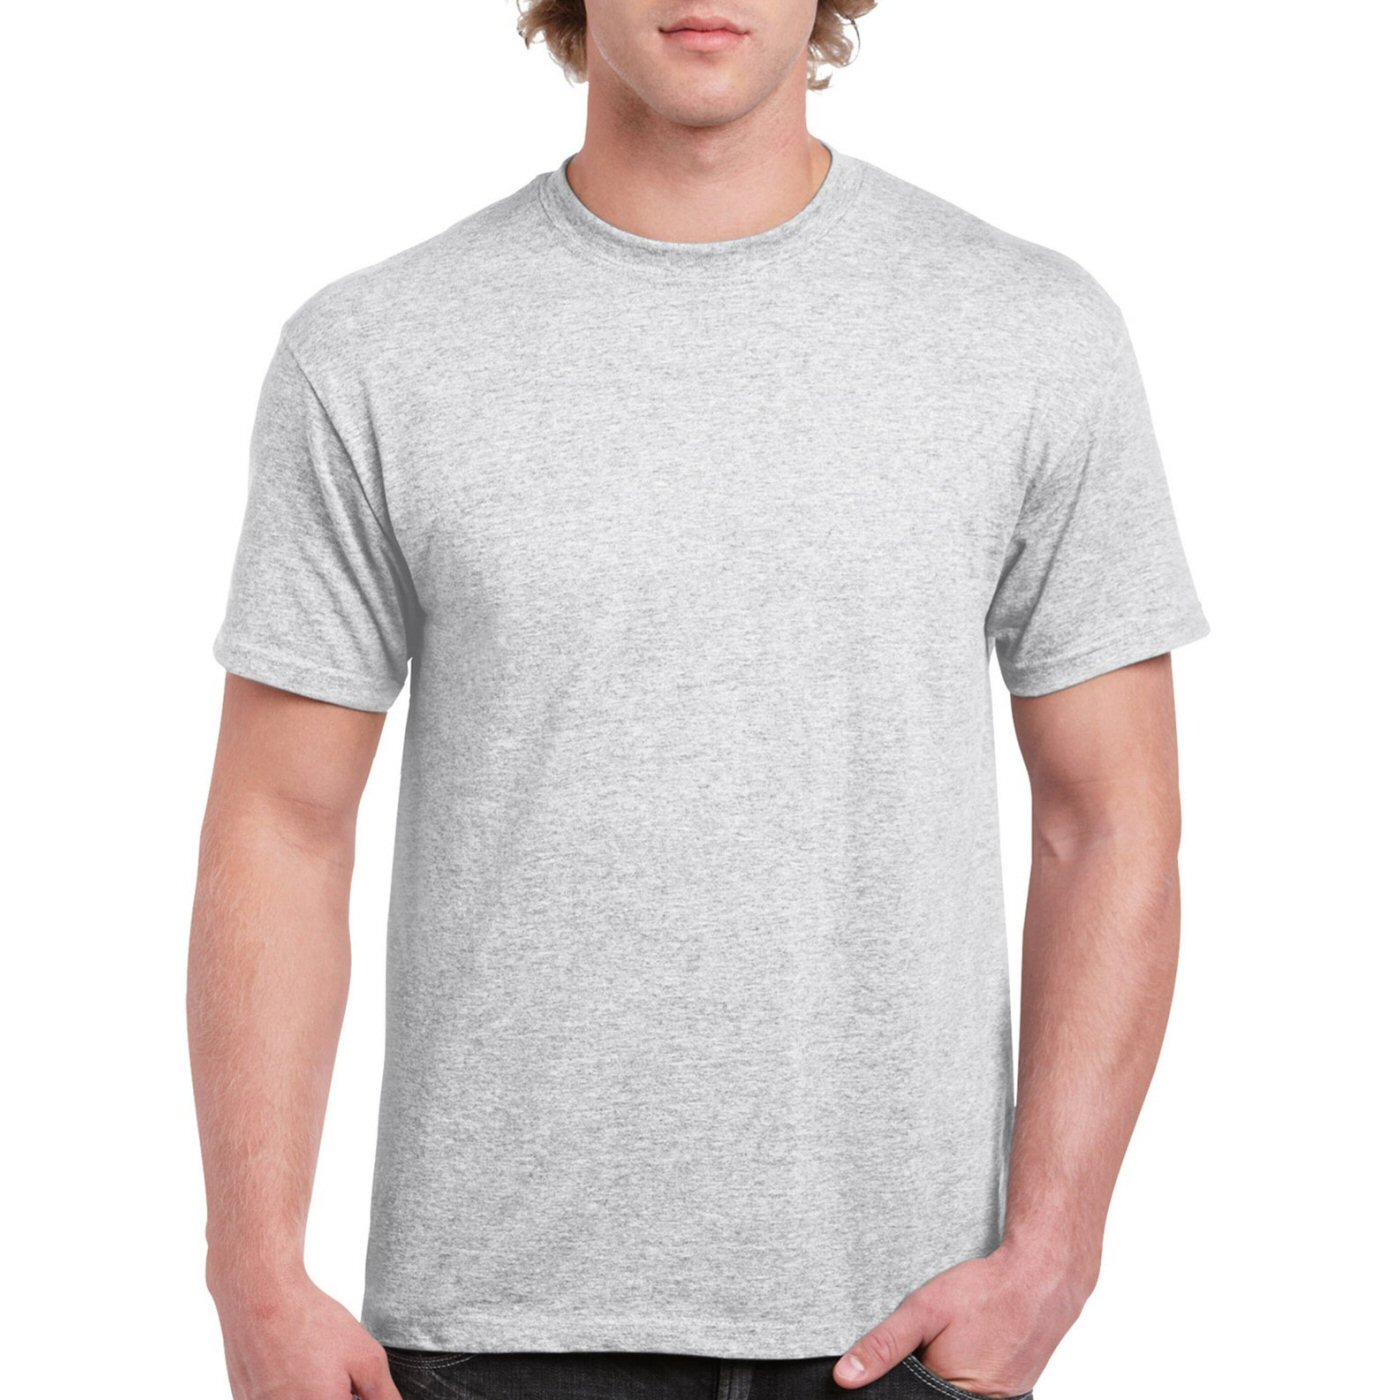 White Melange Plain Round Neck T-shirt image